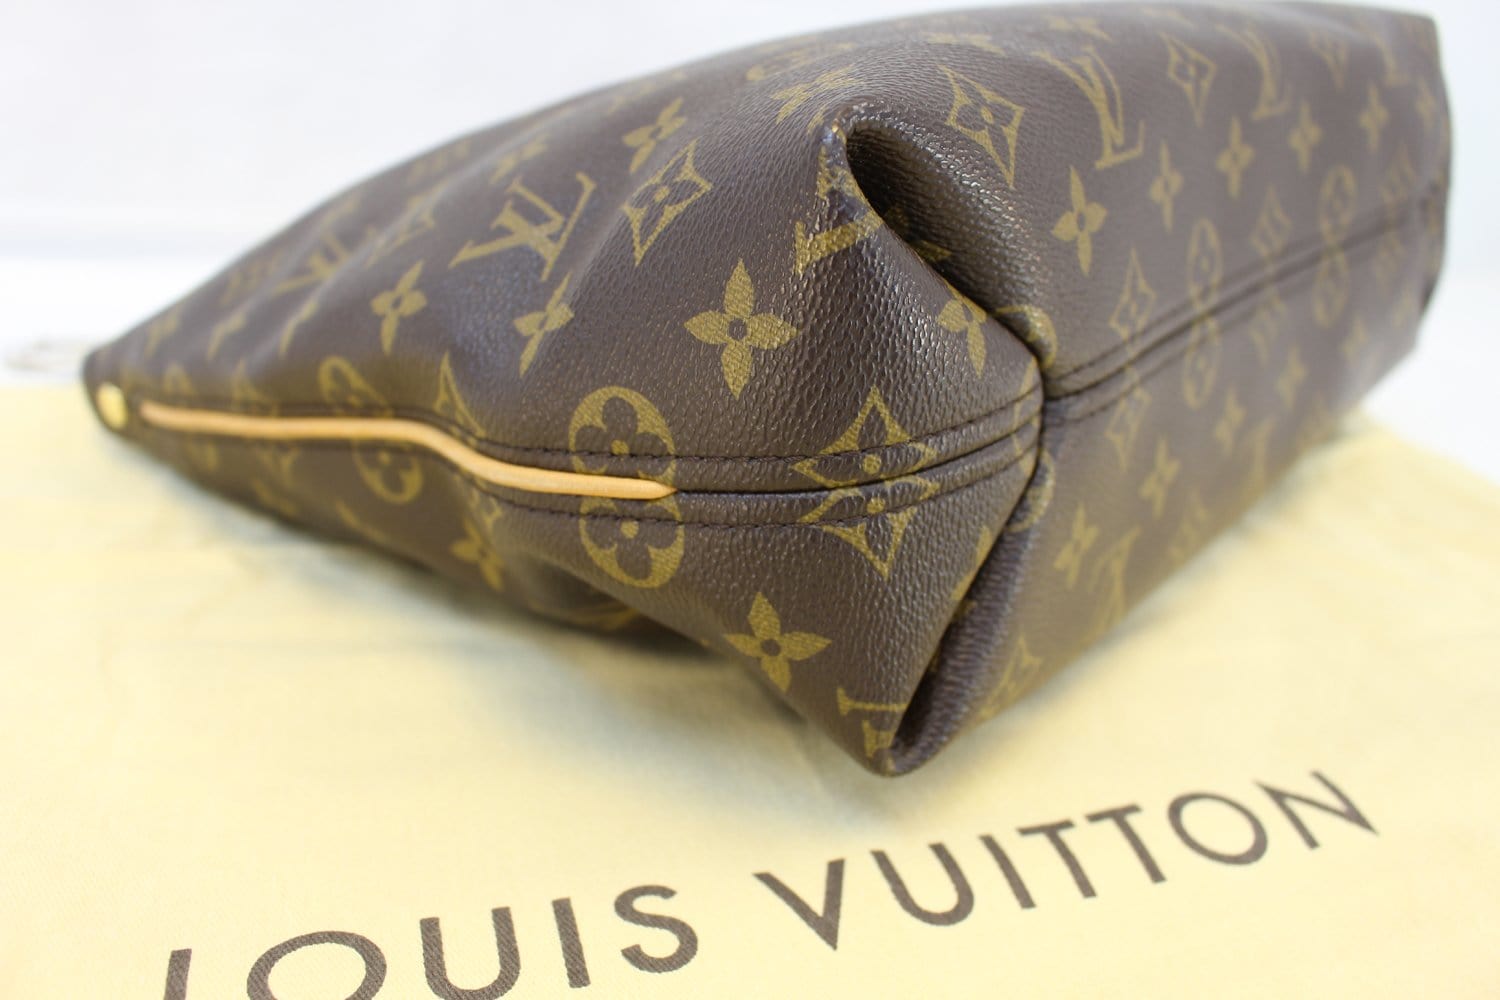 Authentic LOUIS VUITTON Monogram Sully PM M40586 Shoulder bag  #260-004-650-6115